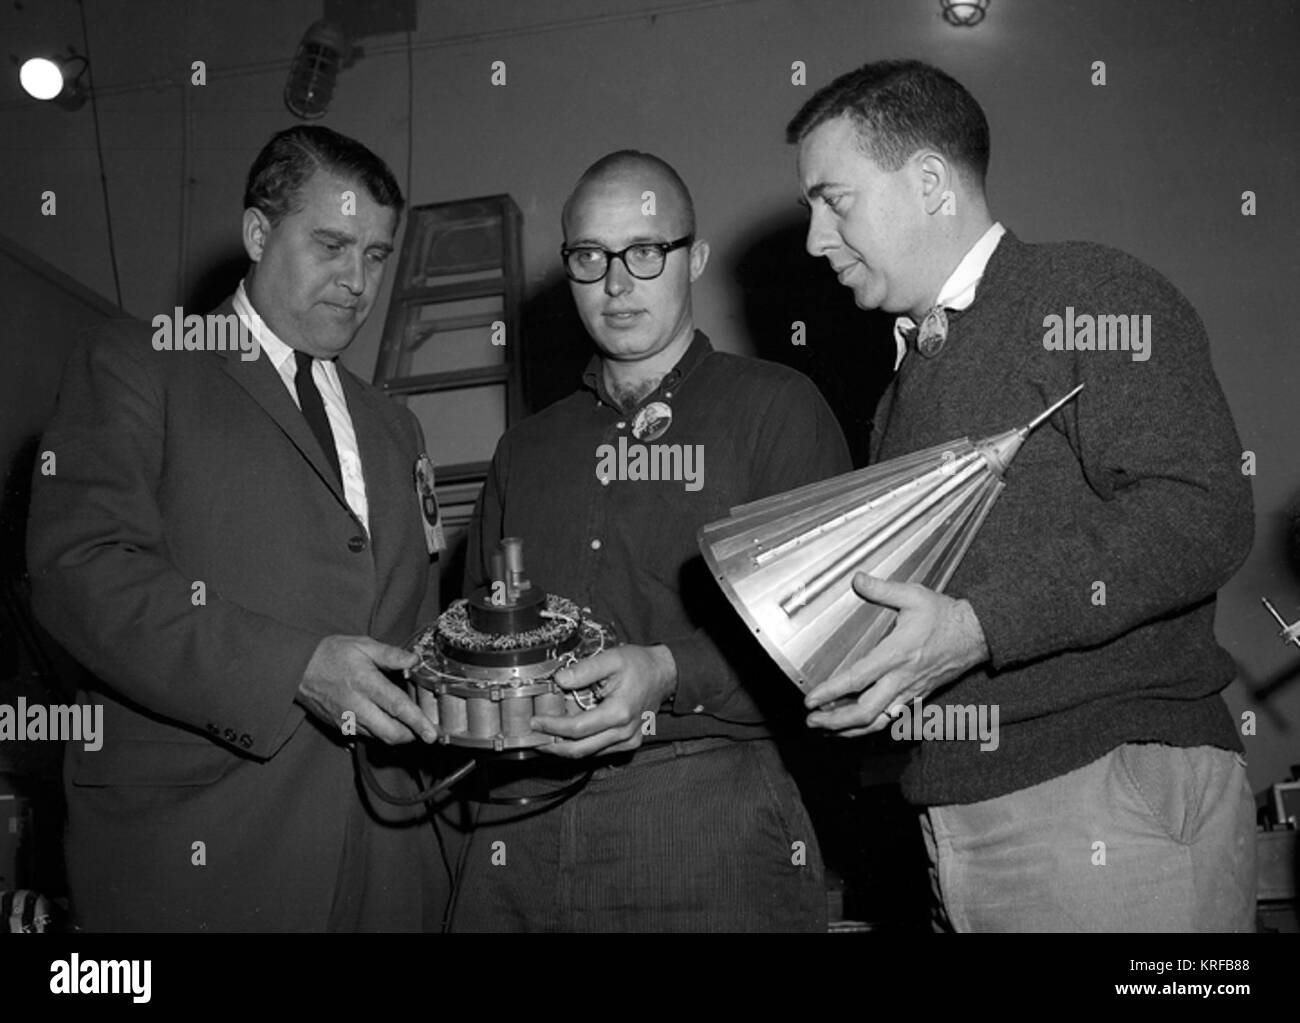 Il DR. VON BRAUN guardando il PAYLOAD di JUNO II AM-14, PIONEER IV SATELLITE. Marzo 1, 1959 REF: MFL-59-293.1 (MIX FILE) Pioneer 4 von Braun ispezione Foto Stock